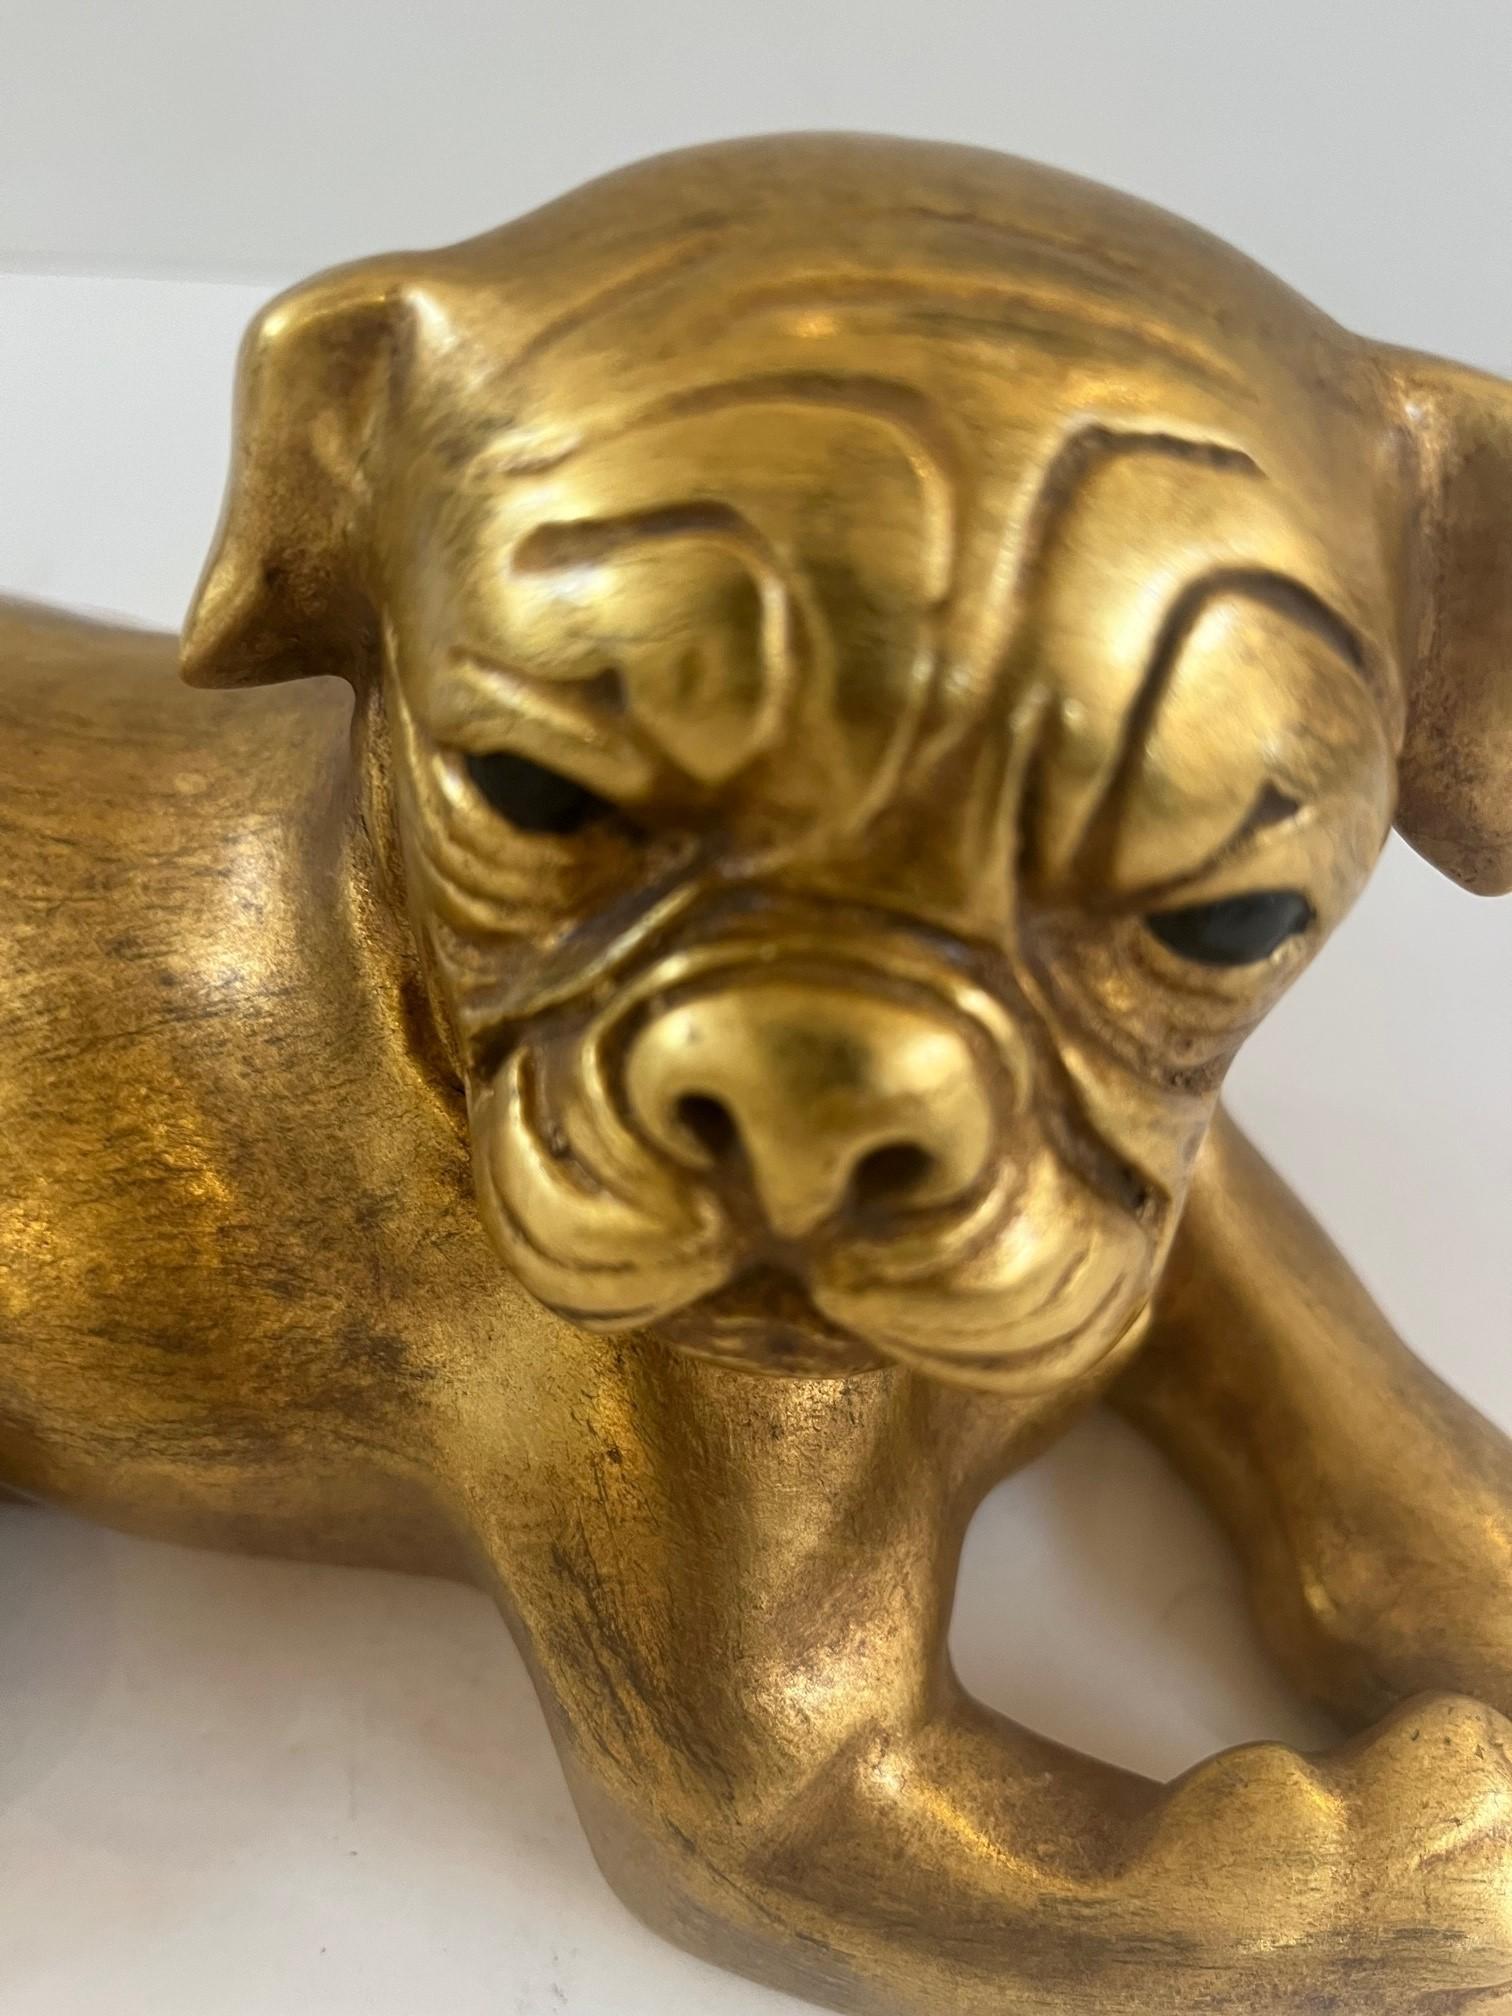 Vintage Bronze gegossen neu lackiert (vergoldet) Ruhender Mops Hund Kunstskulptur von Maitland Smith 